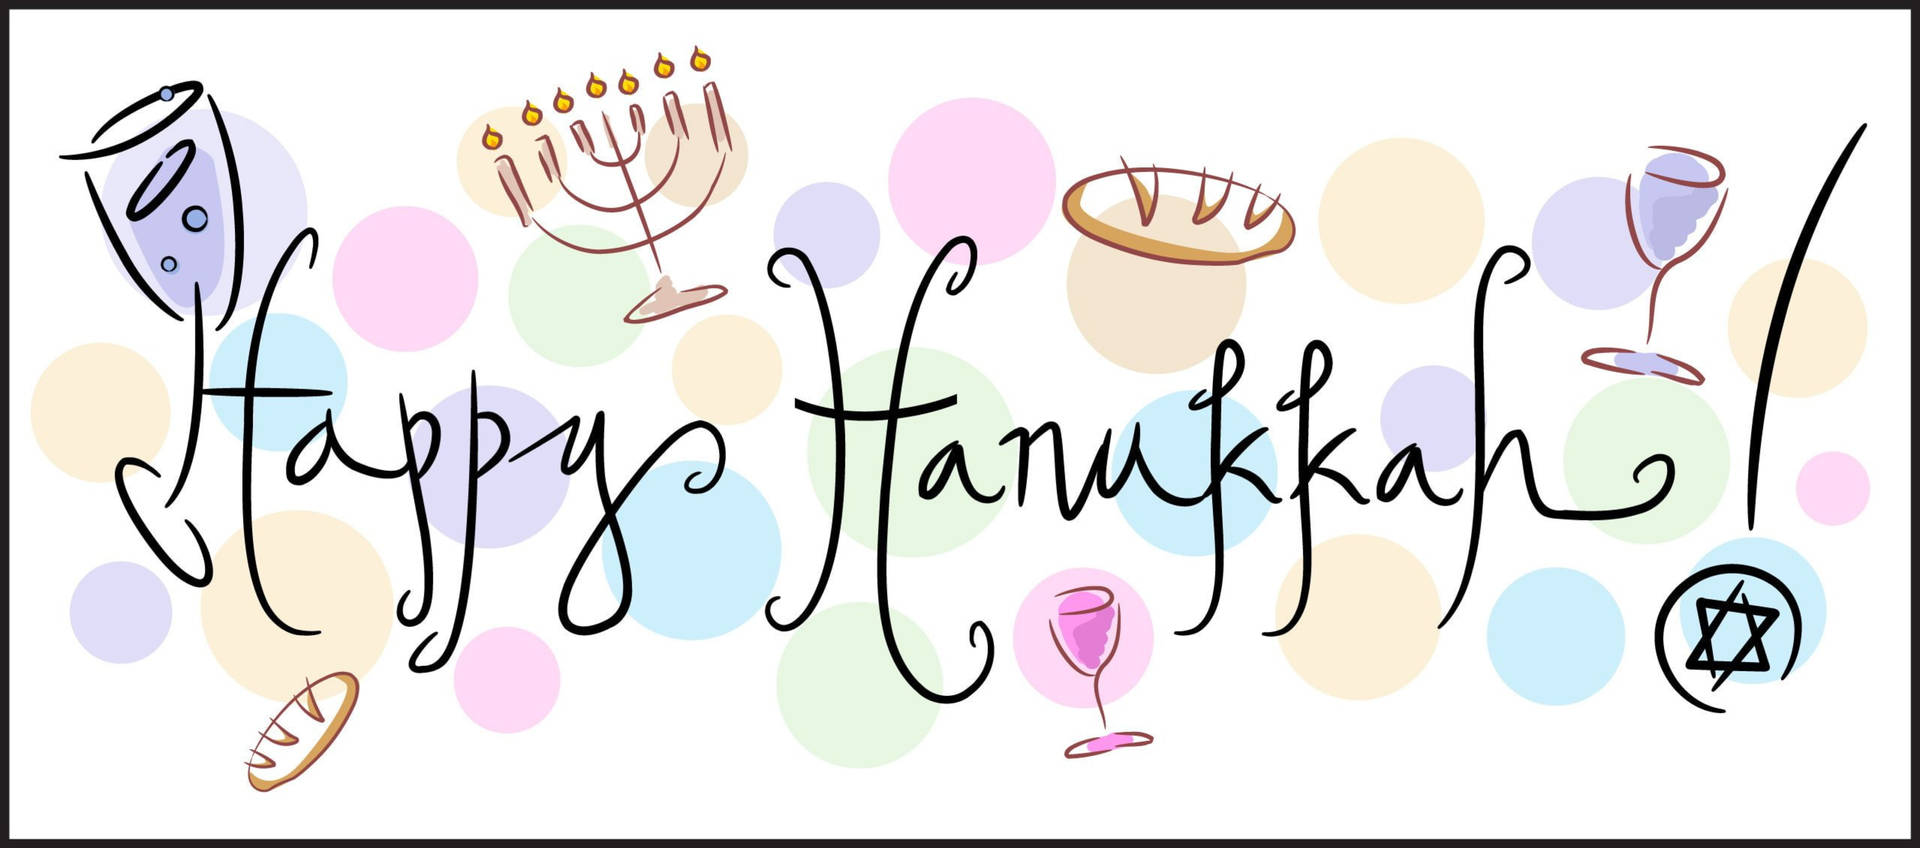 Joyful Hanukkah Celebration With Exquisite Aesthetic Background